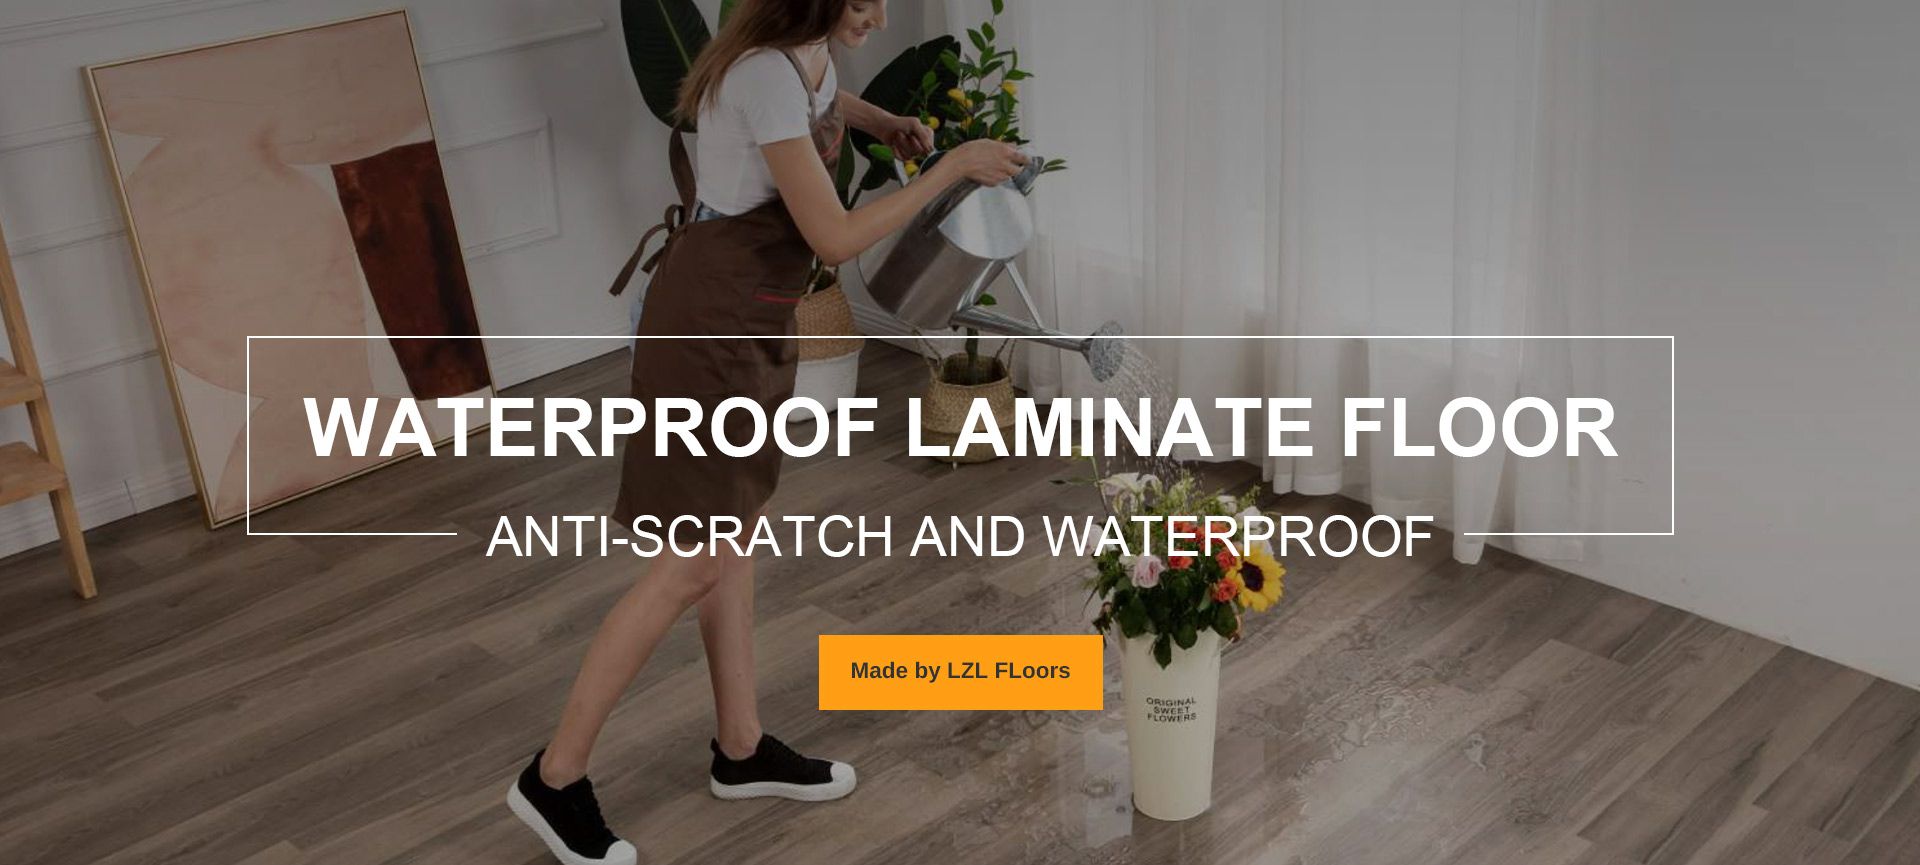 Waterproof Laminate Floor